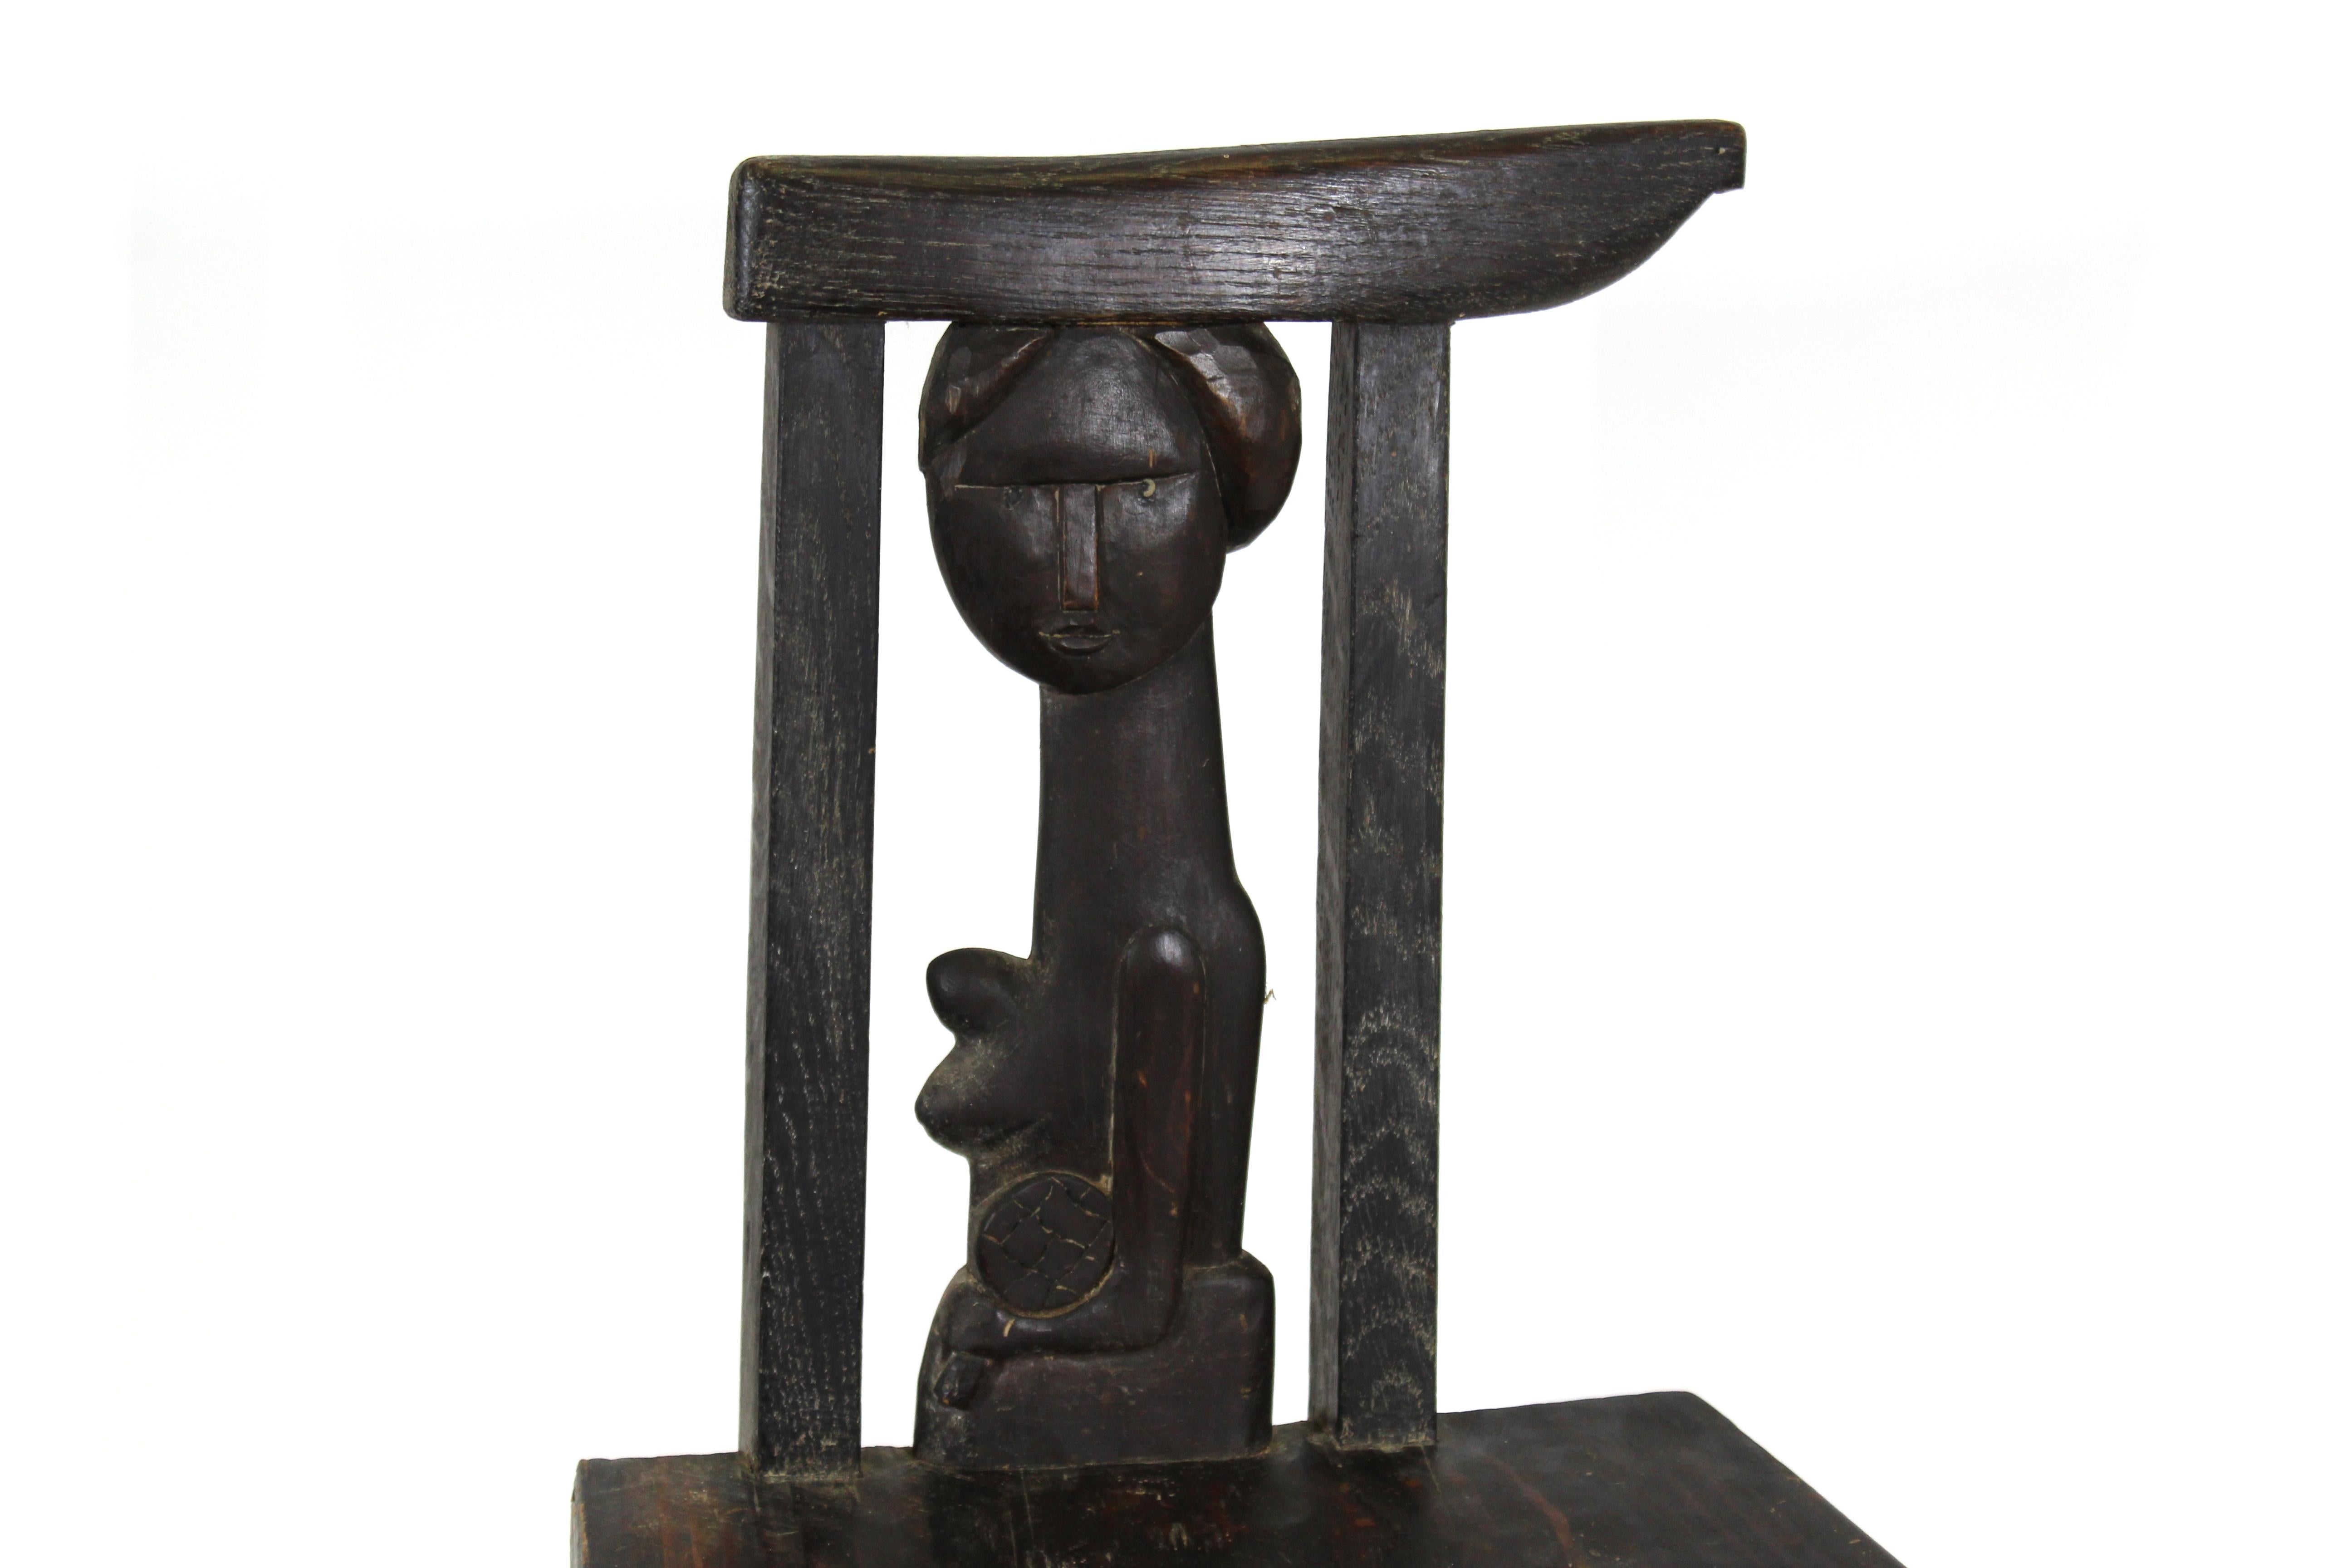 Chaise en bois sculpté d'art populaire polonais créée par le célèbre artiste et sculpteur polonais Antoni Rzasa (1919-1980). La chaise présente un dossier sculpté d'une femme nue. Le bas du siège porte le cachet 